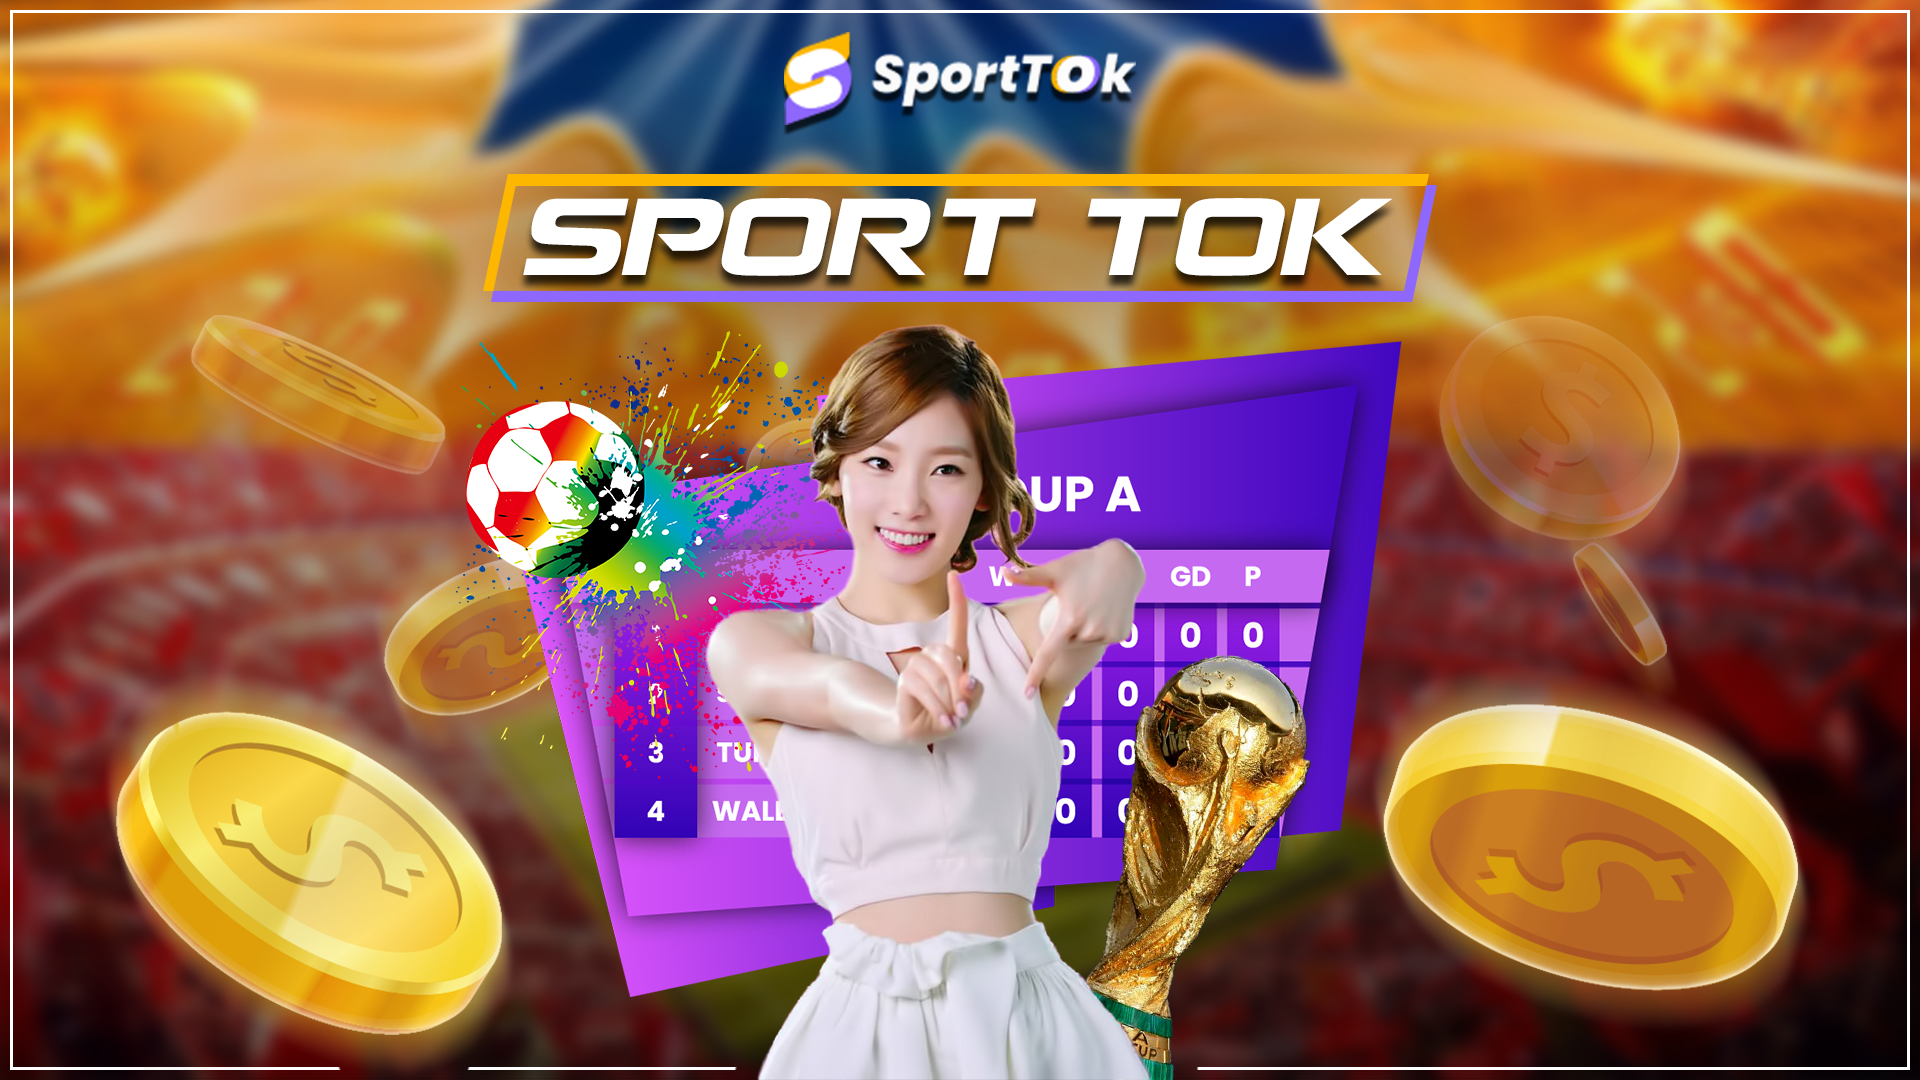 Sport Tok cập nhật các sự kiện thể thao phổ biến trên khắp thế giới và cung cấp tỷ số chính xác nhất; phát sóng trực tiếp và miễn phí các trận đấu